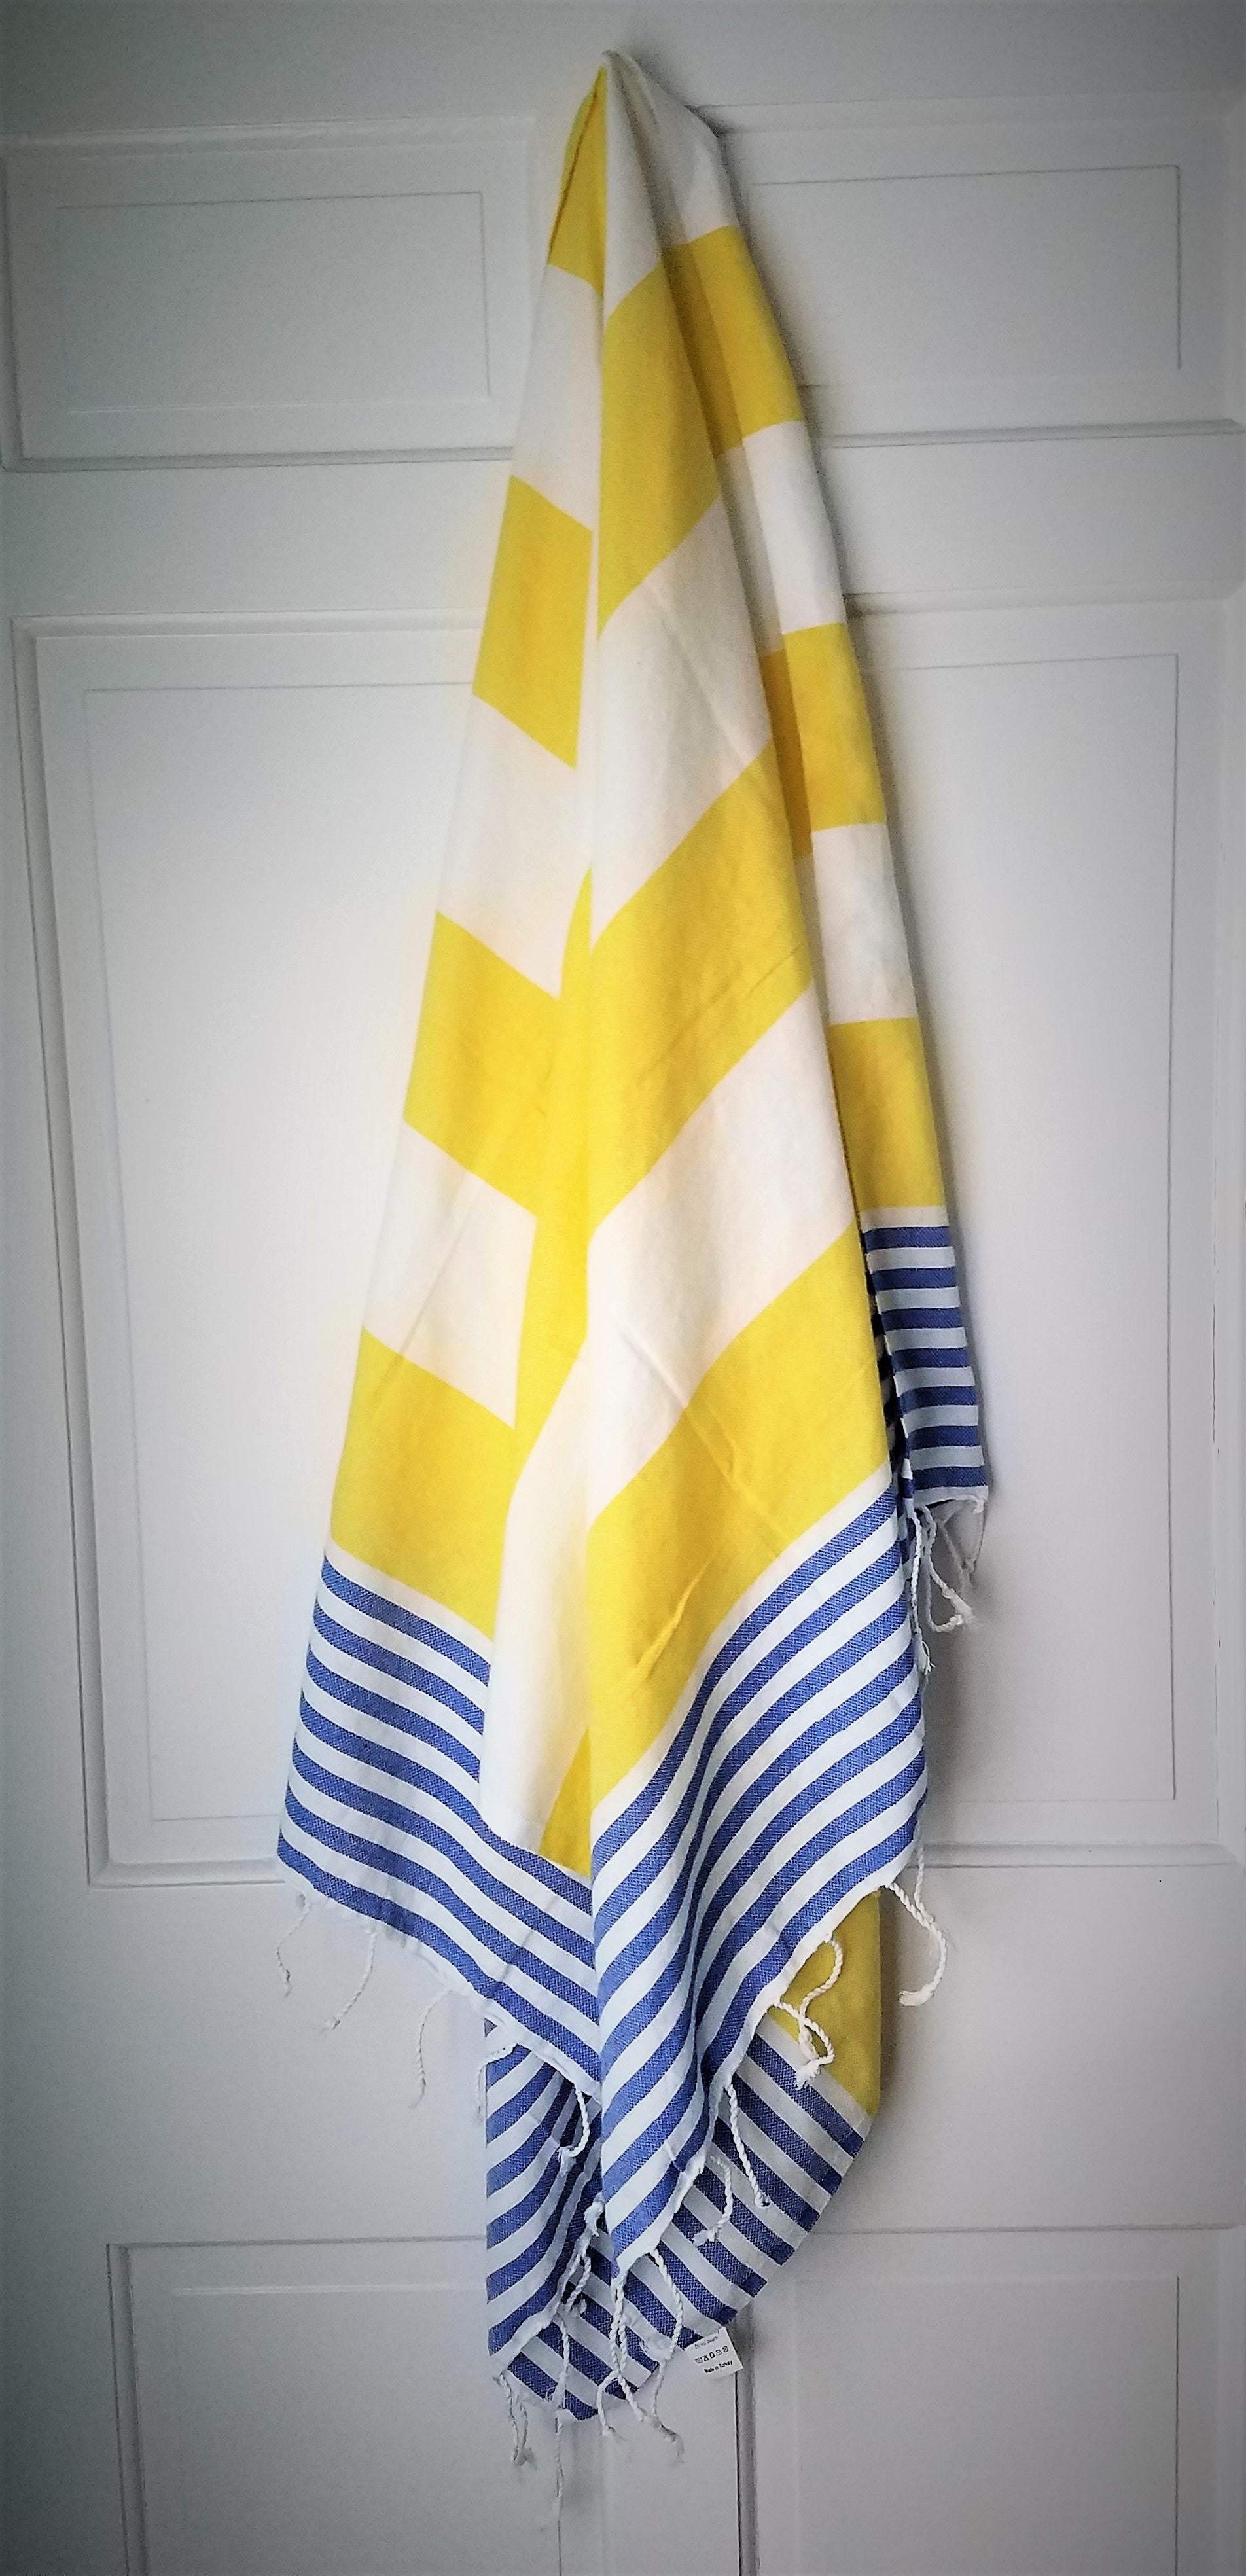 Artistic Bathroom Towels  Julia Di Sano - Colorful Plaid Stripes I -  DiaNoche Designs